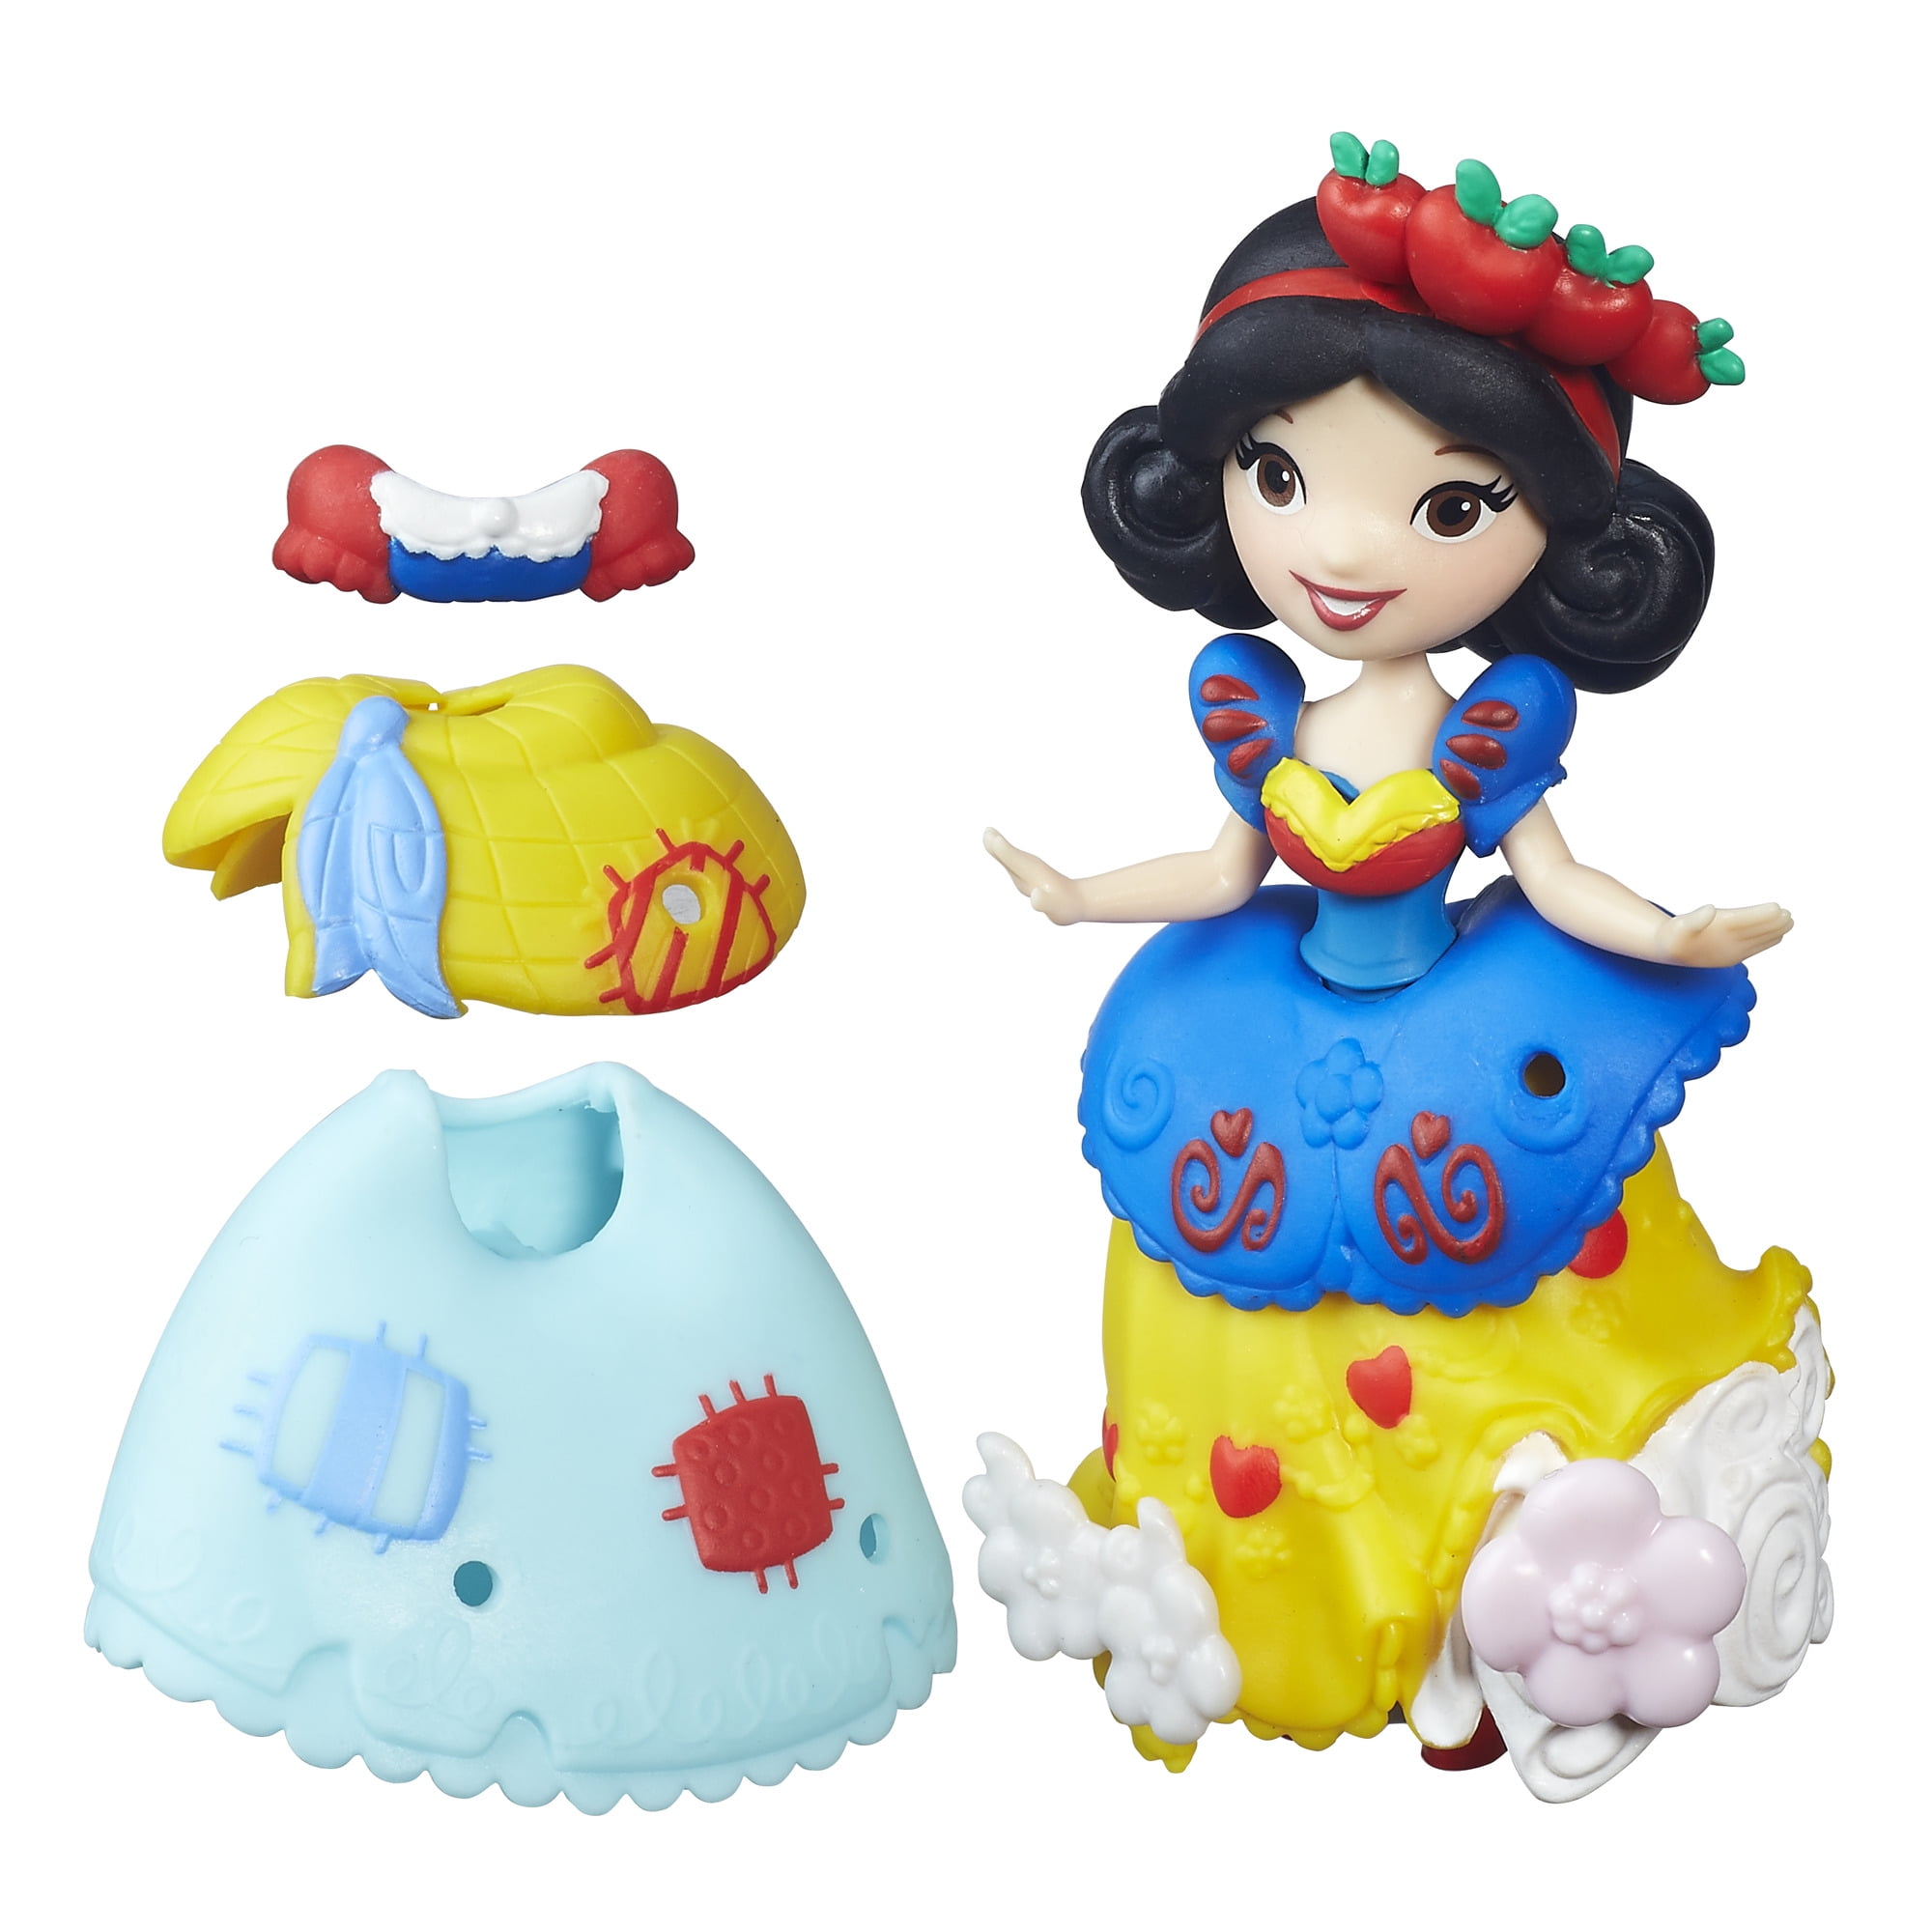 Disney Princess Little Kingdom Fashion Change Snow White